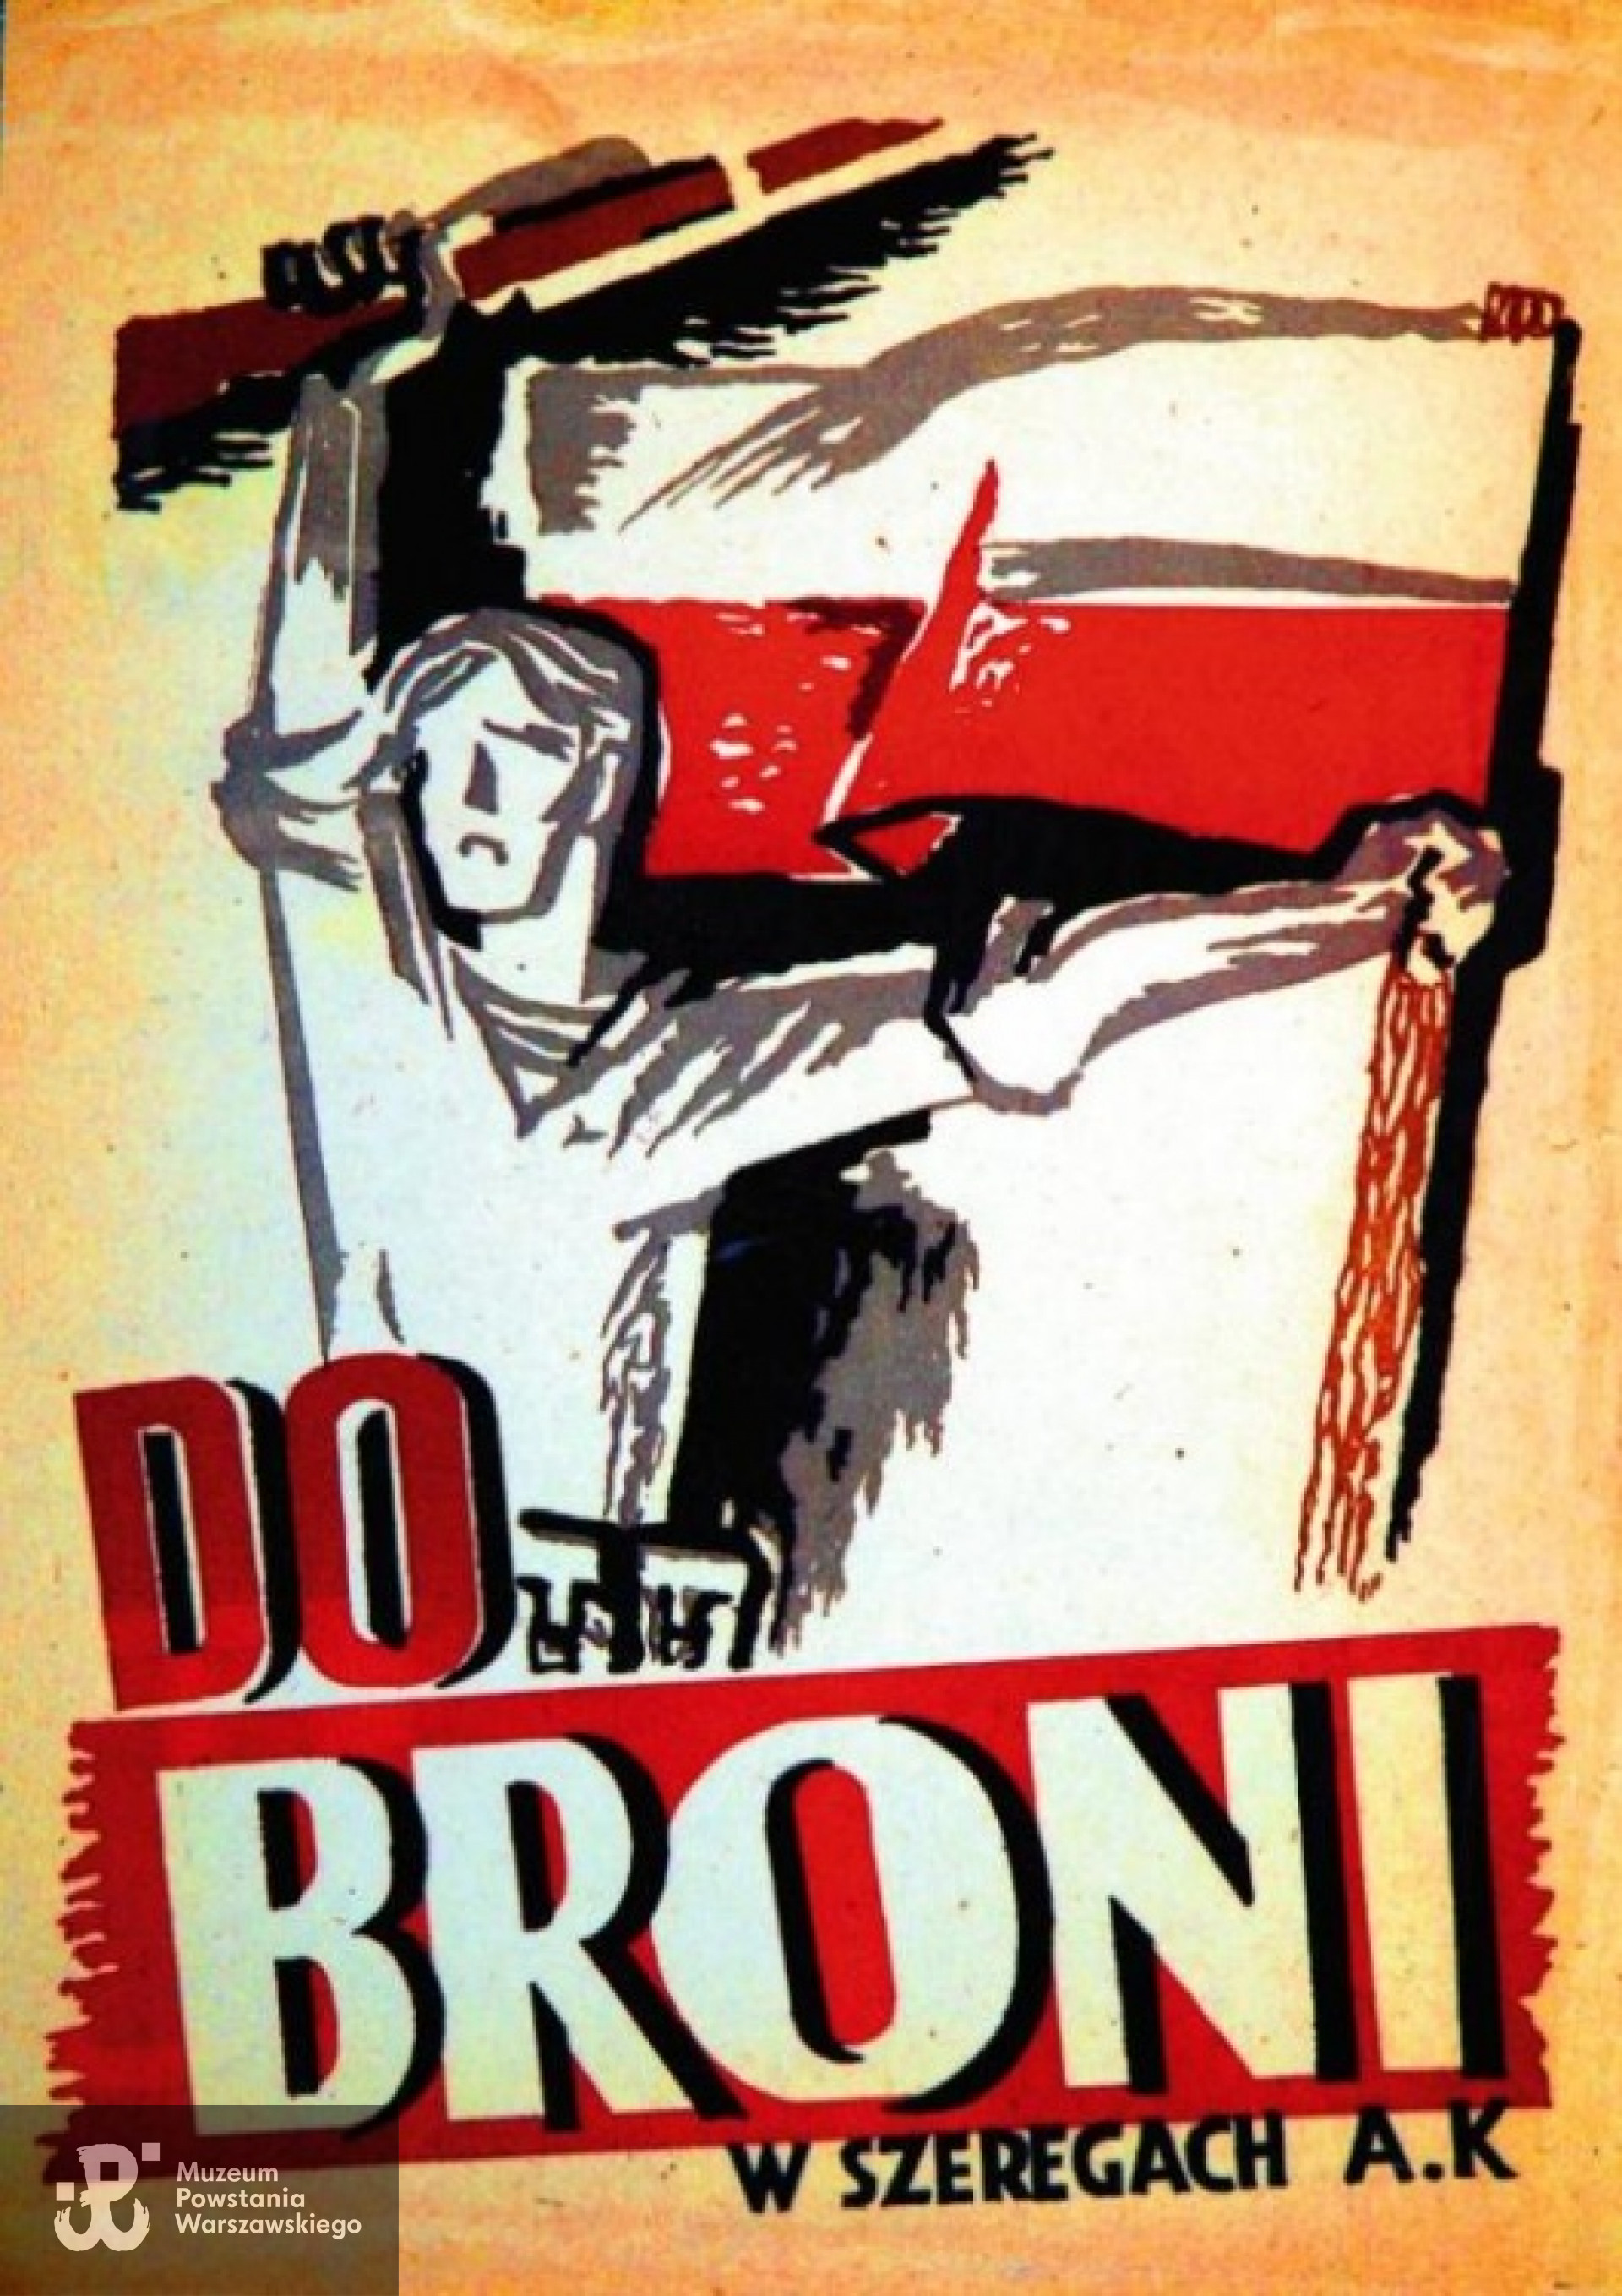 Zaprojektowany w czasie Powstania Warszawskiego wraz z Edmundem Burke słynny plakat Jurgielewicza  „Do broni, w szeregach AK”.